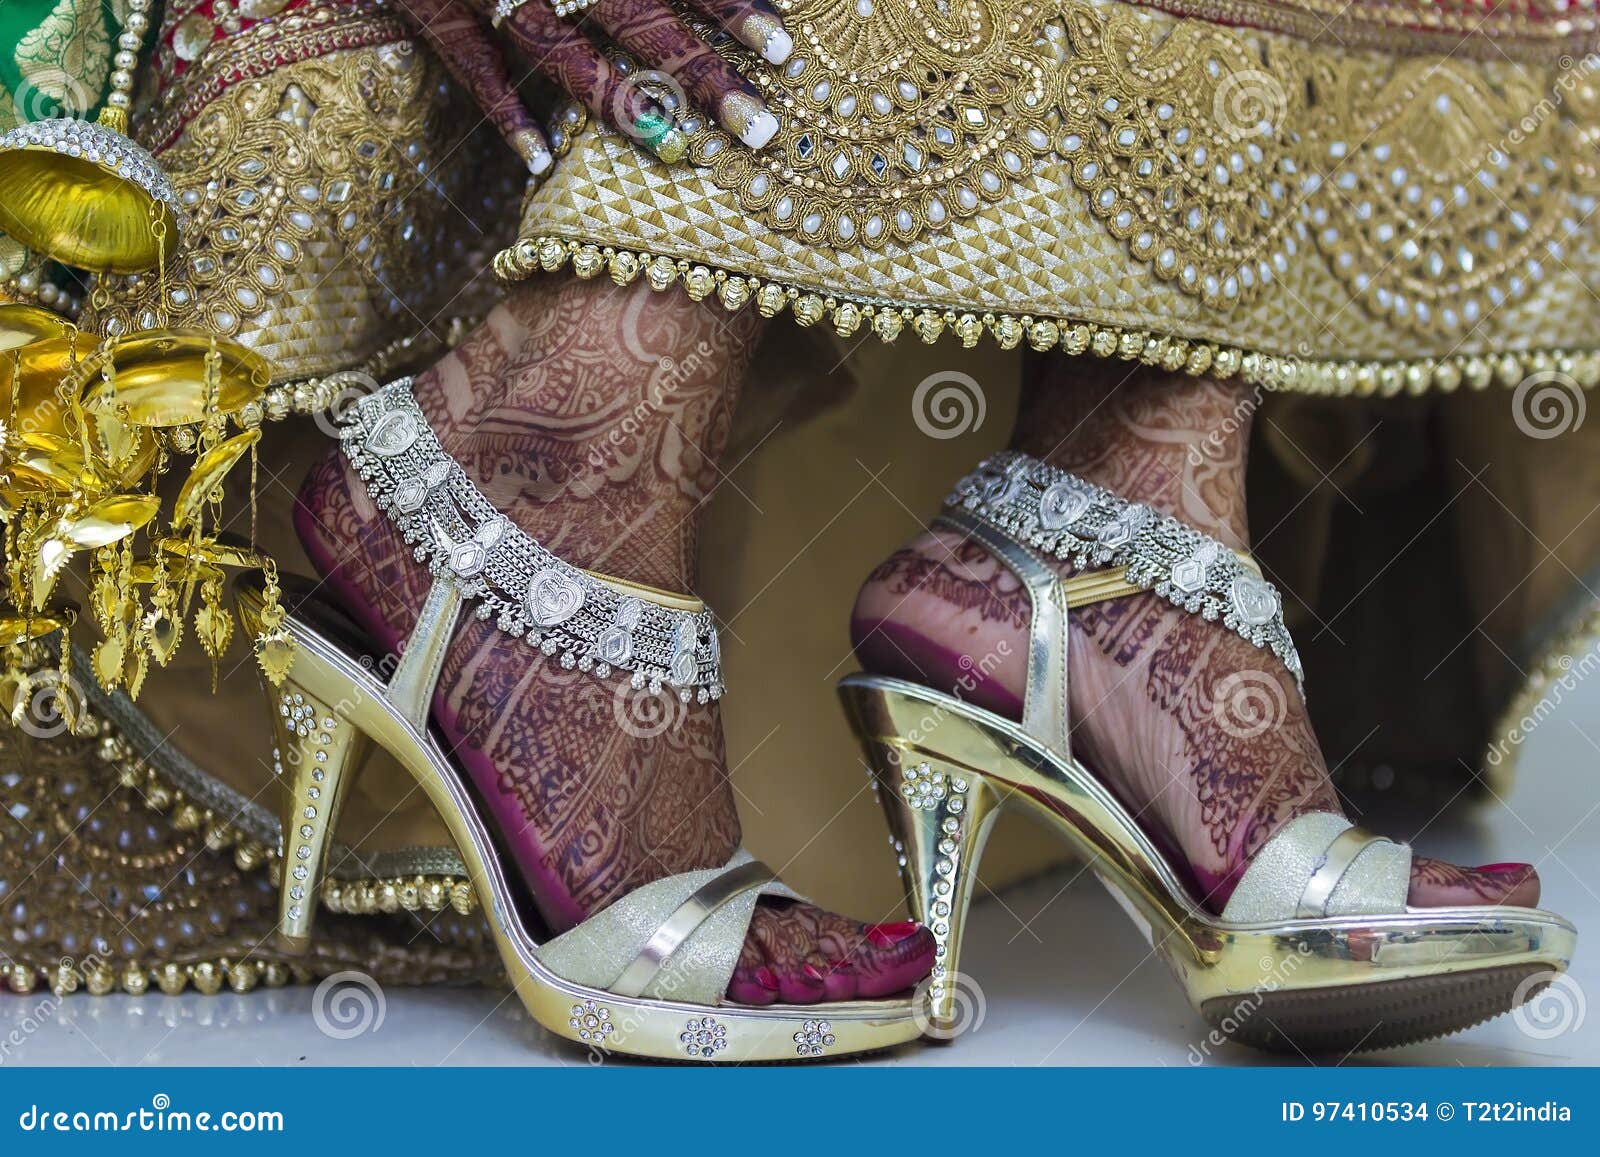 Saar Wedges | Best Embellished Heels for Wedding – aroundalways